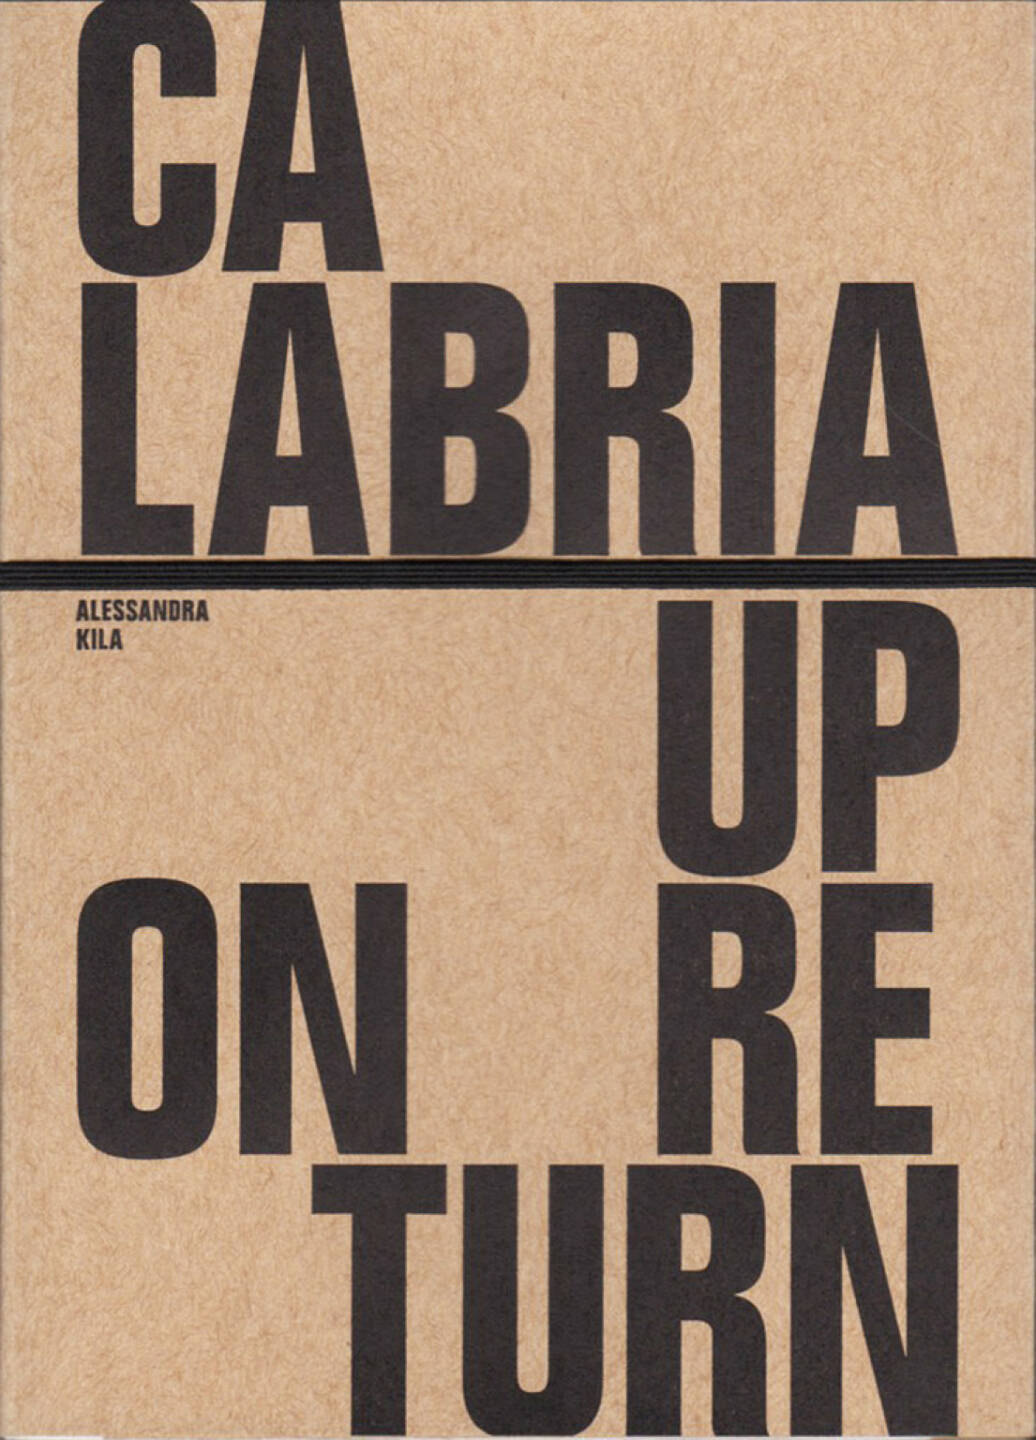 Alessandra Kila - Calabria Upon Return, Paper Tigers Books 2015, Cover - http://josefchladek.com/book/alessandra_kila_-_calabria_upon_return